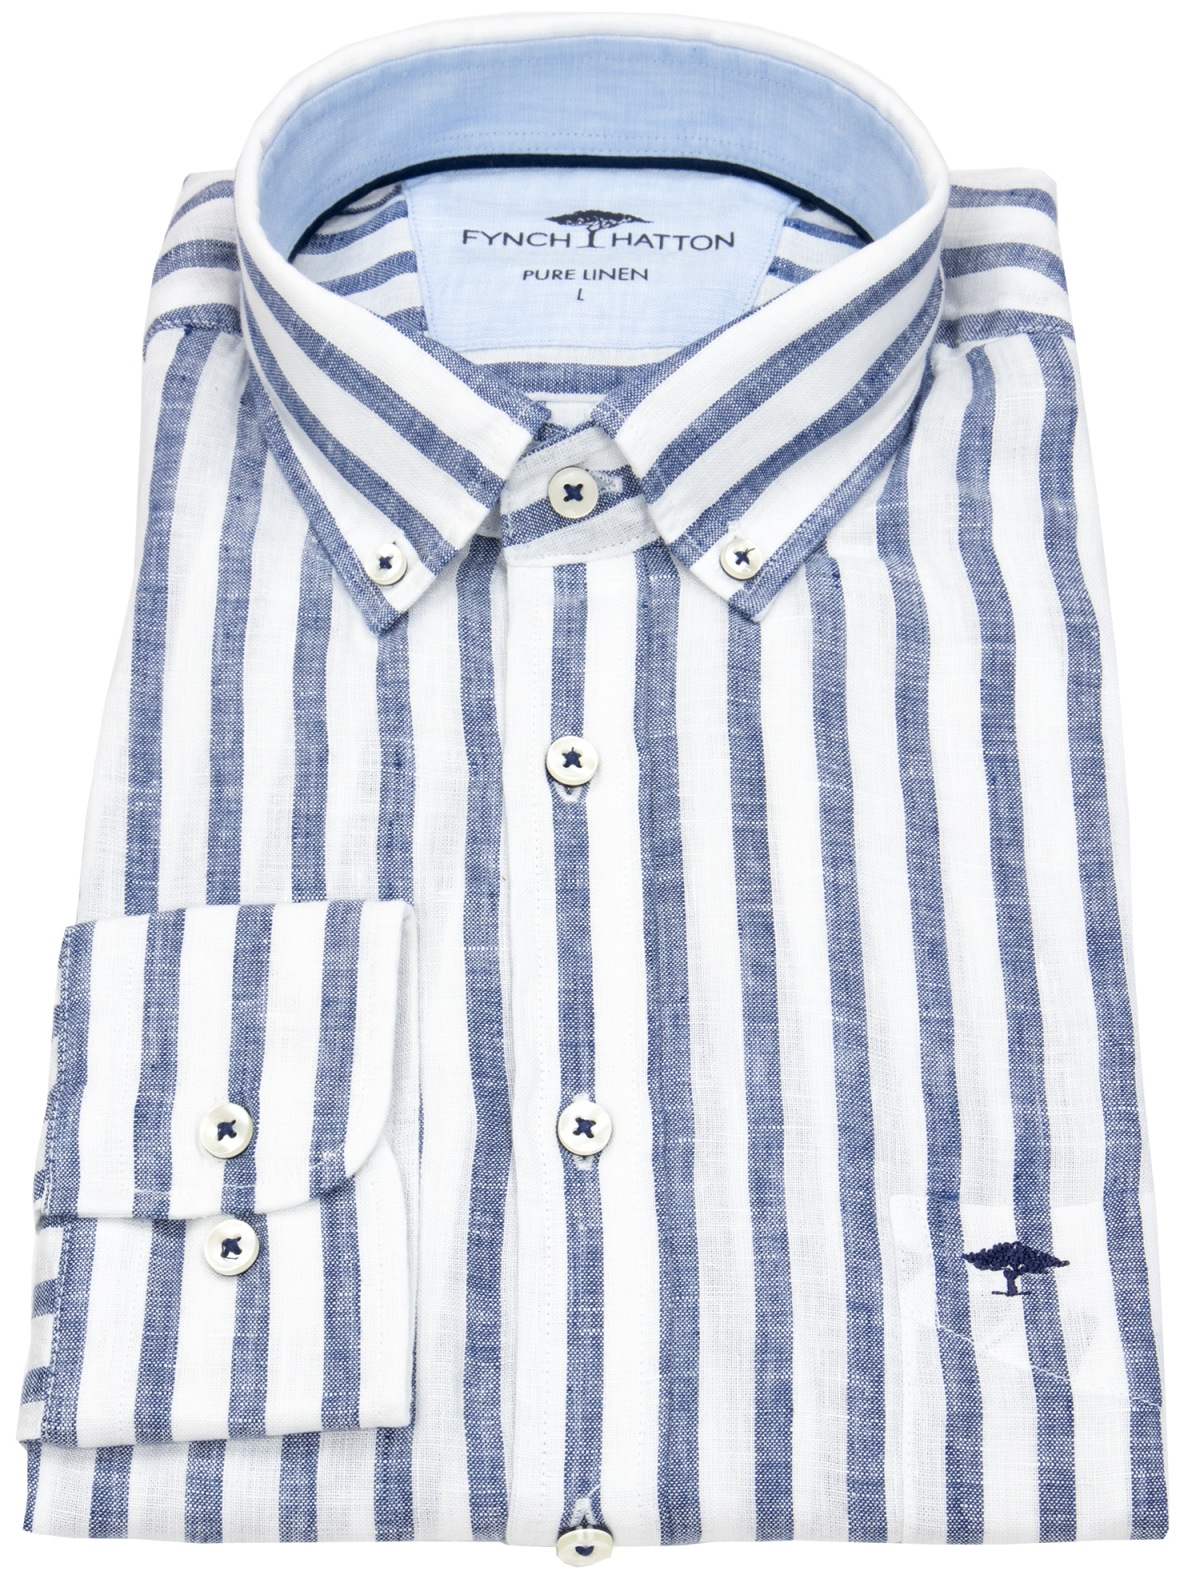 Fynch-Hatton - Leinenhemd - Casual Fit - Button Down - Streifen - blau / weiß